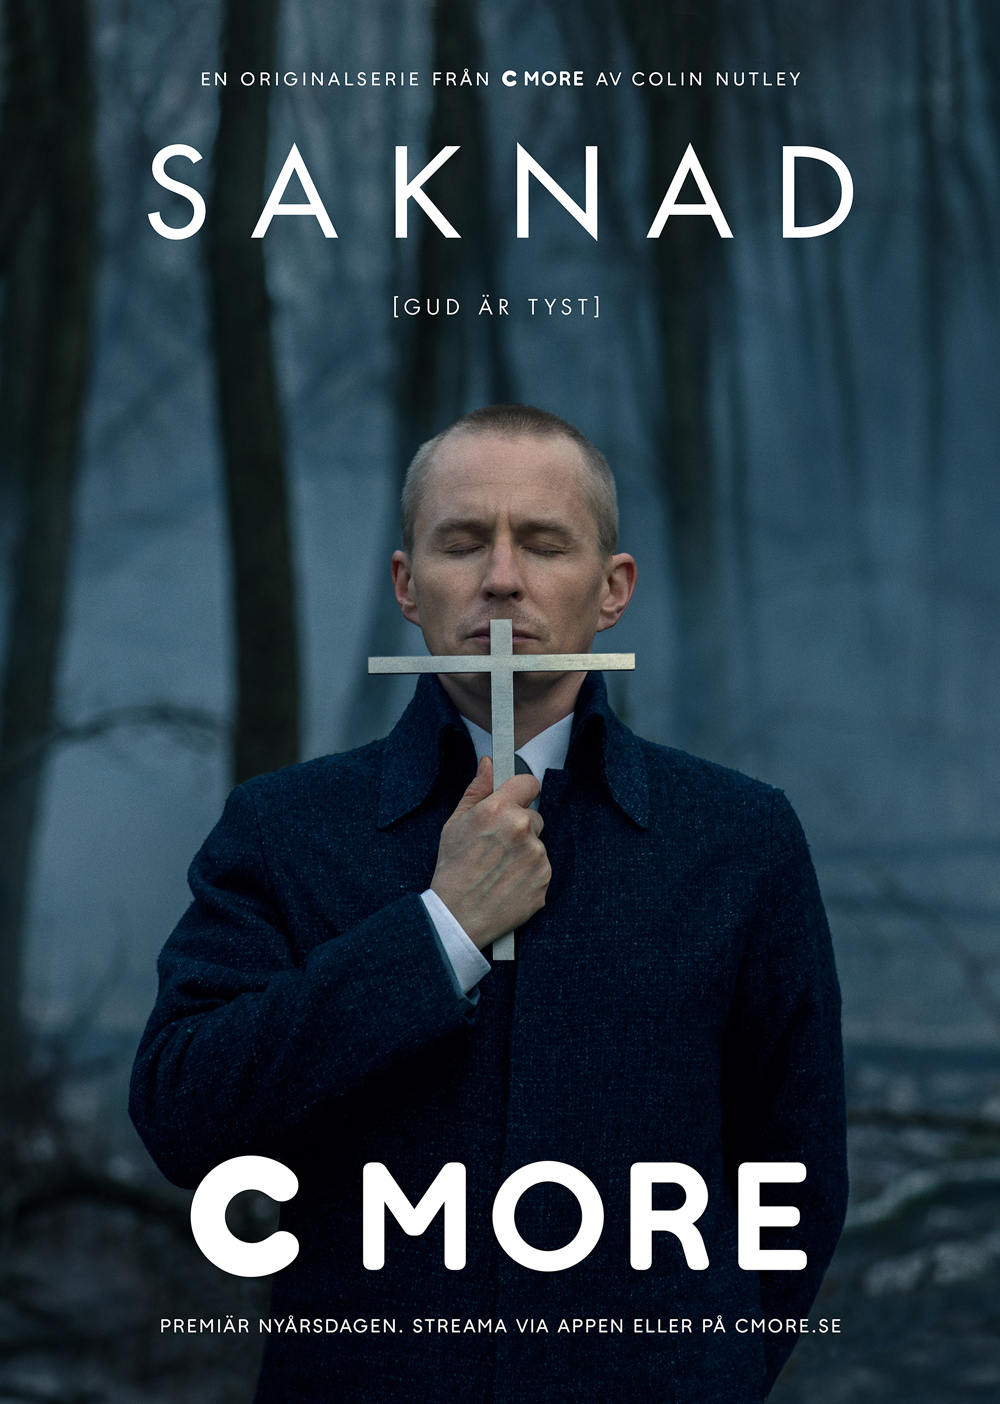 Cmore-Saknad-5